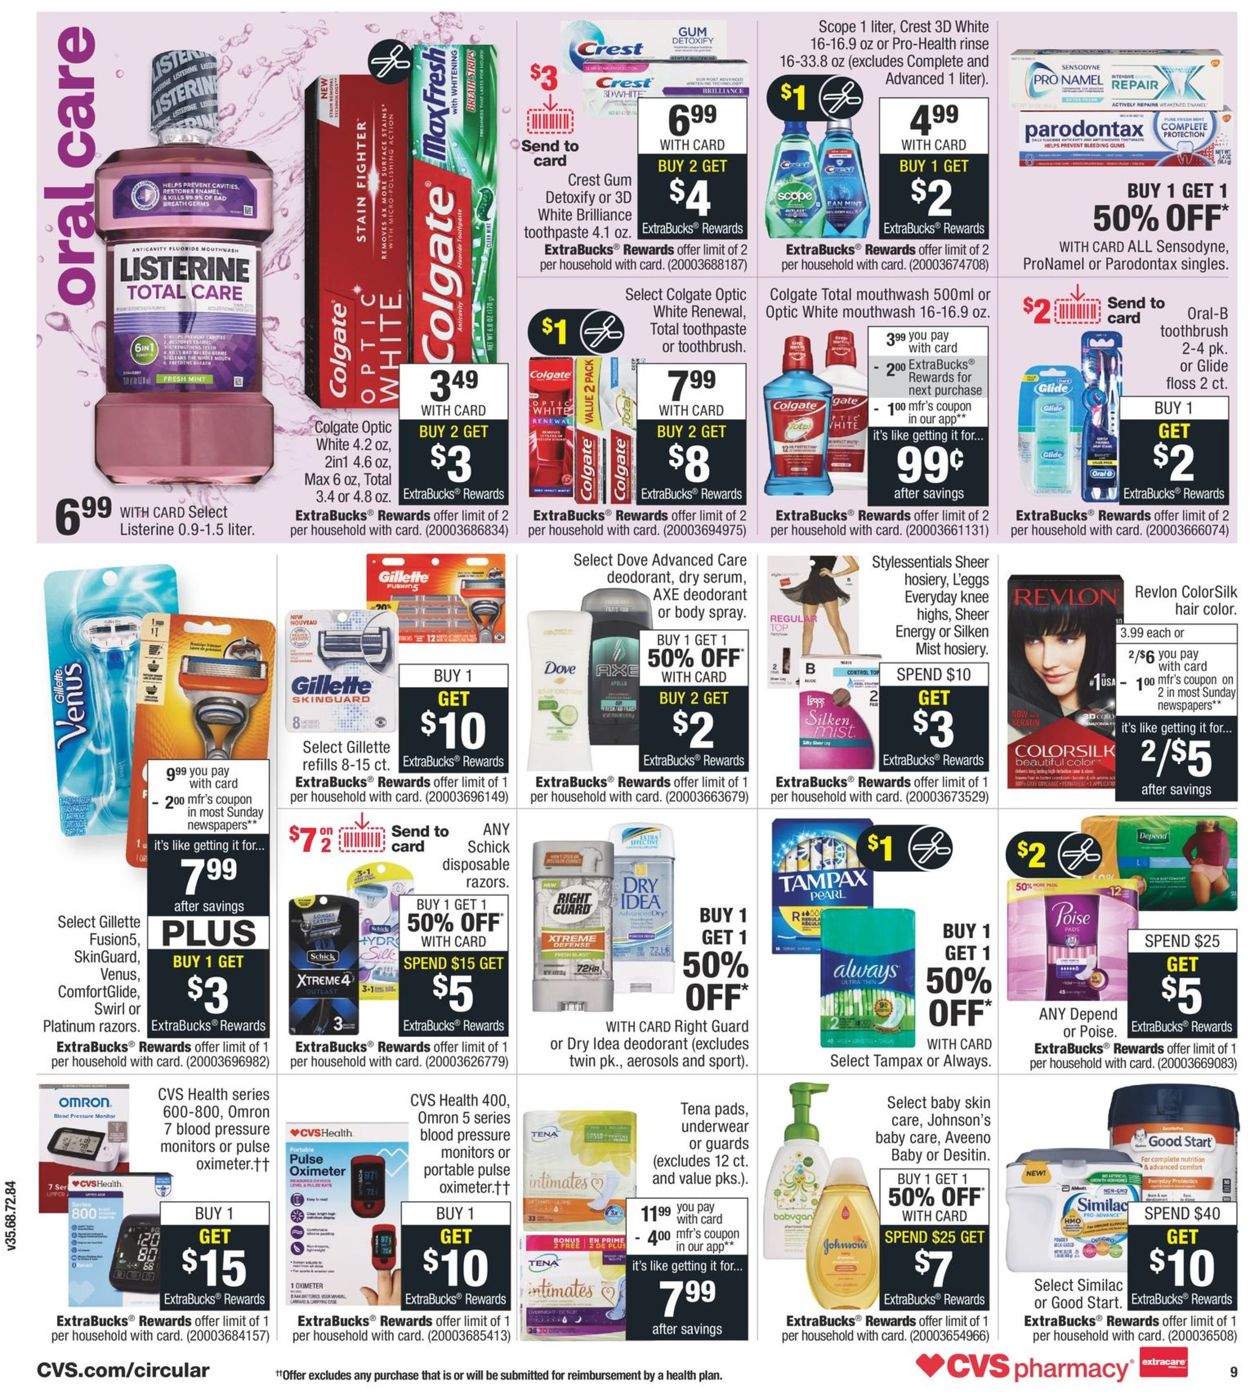 CVS Pharmacy Ad from 08/30/2020